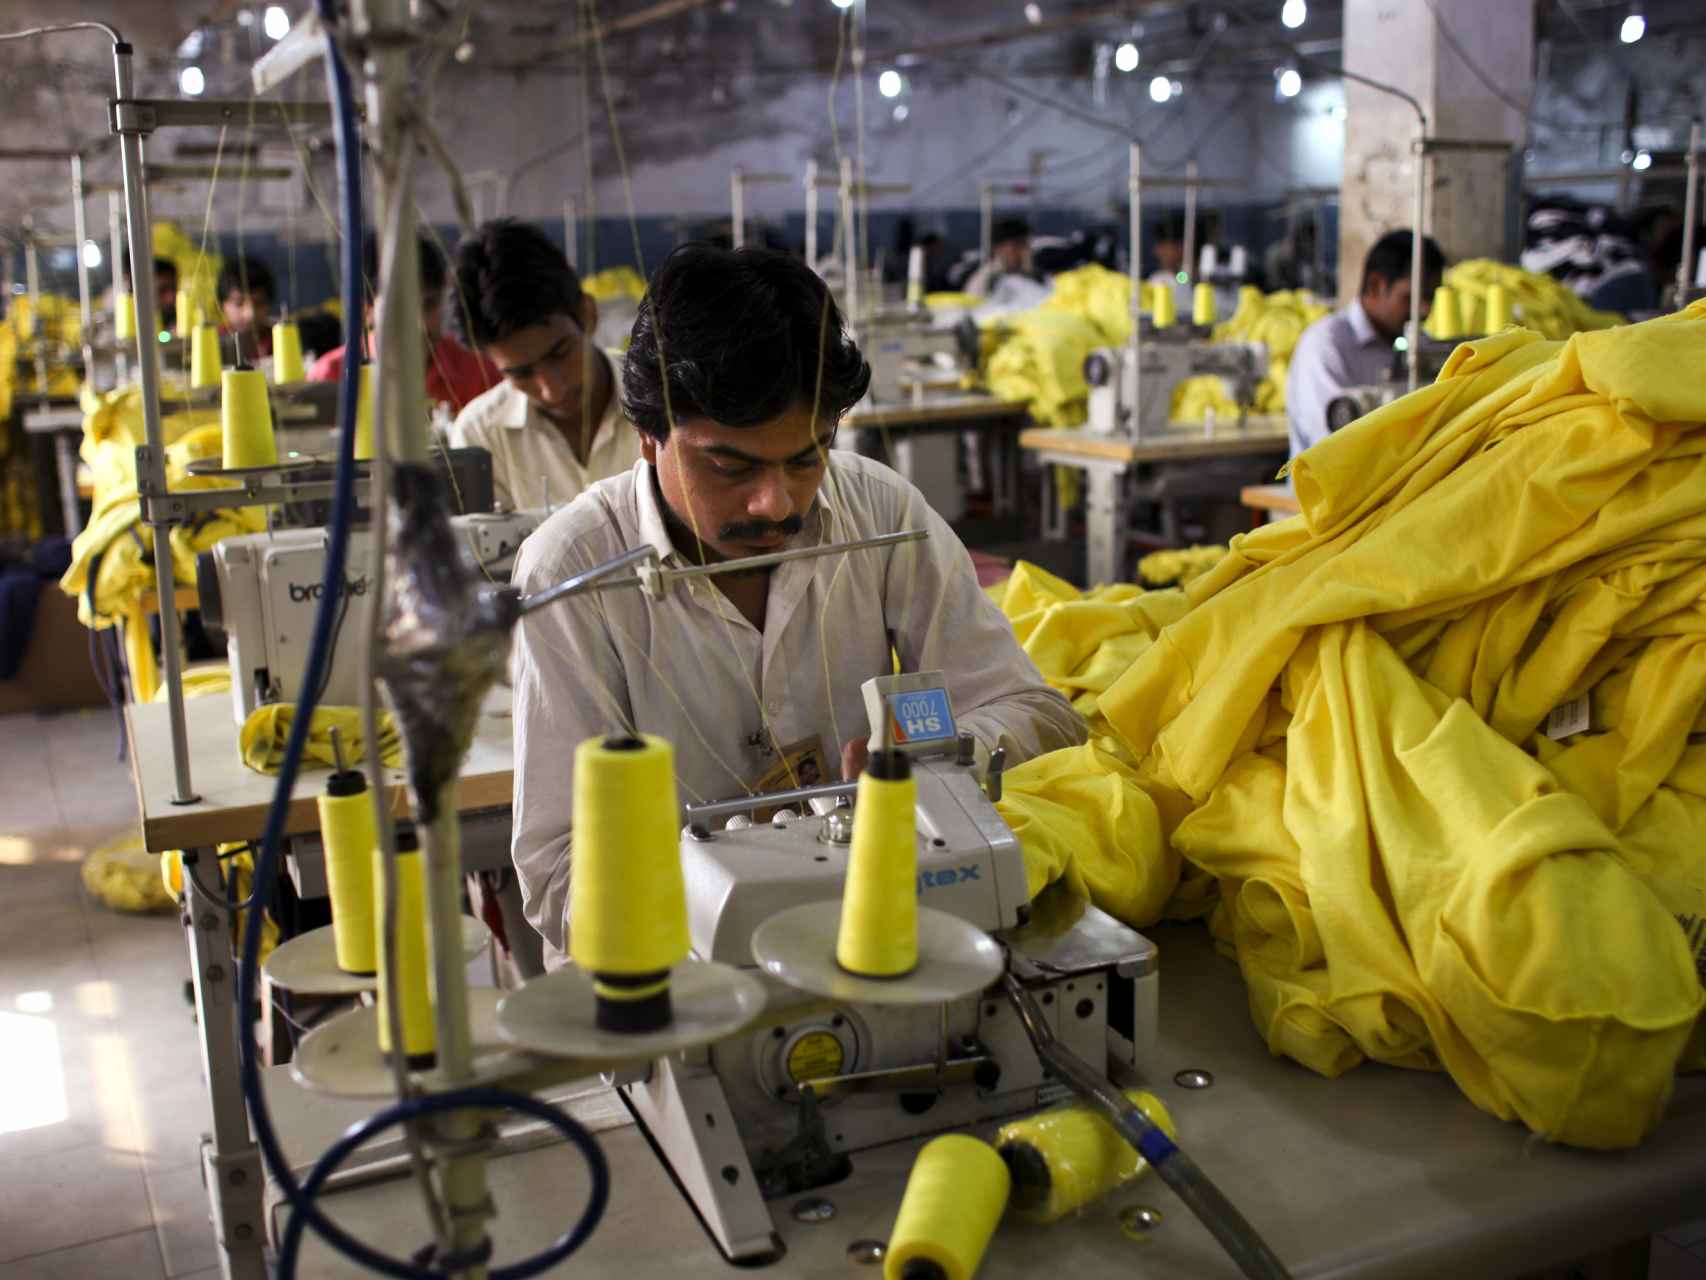 Trabajadores cosen camisetas fabricadas para Inditex en una fábrica en Pakistán.